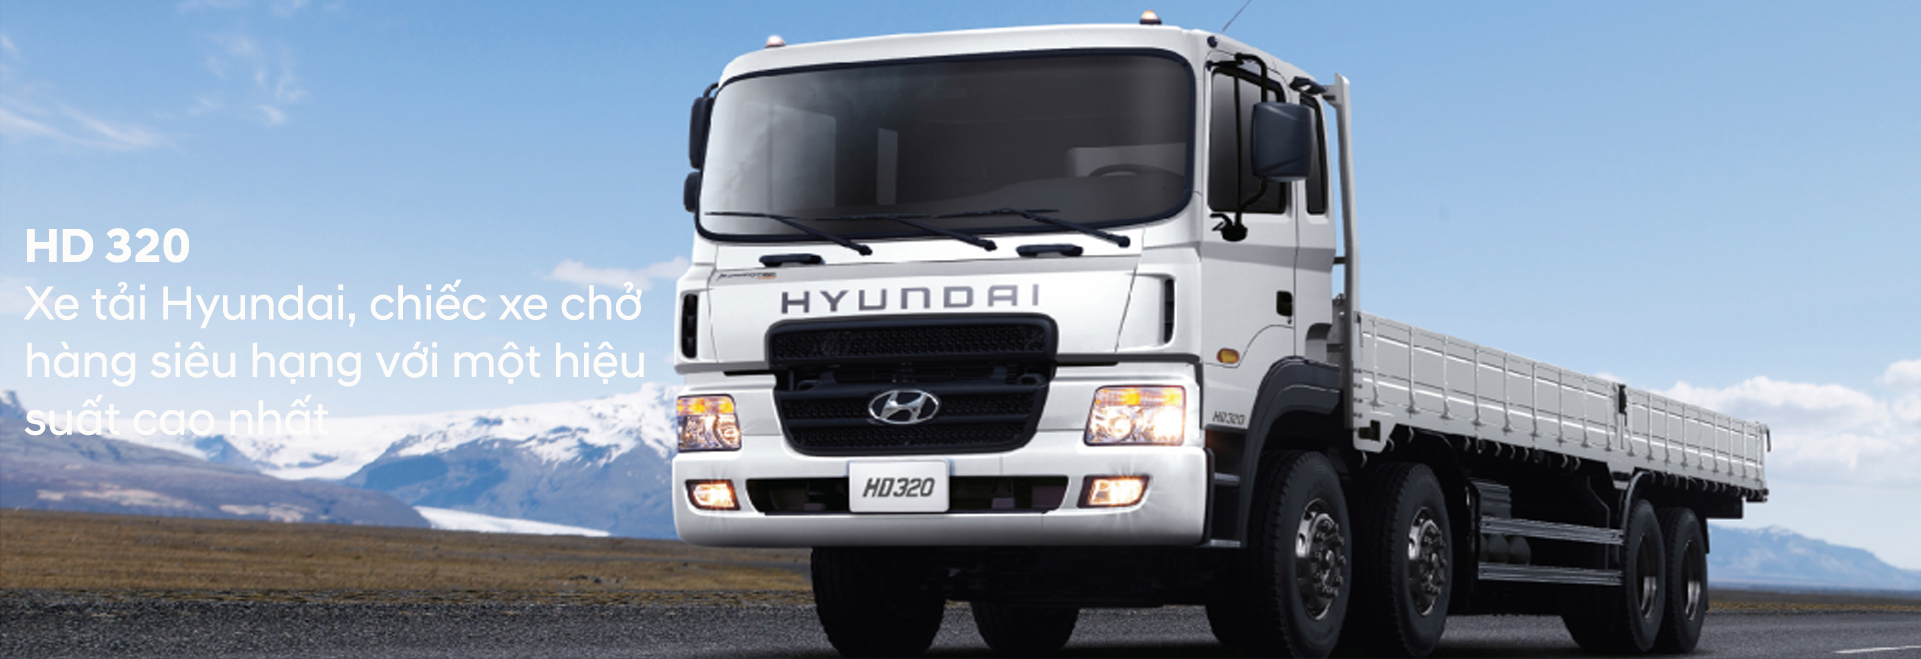 Tiếp nhiên liệu cho xe hyundai HD320/380PS